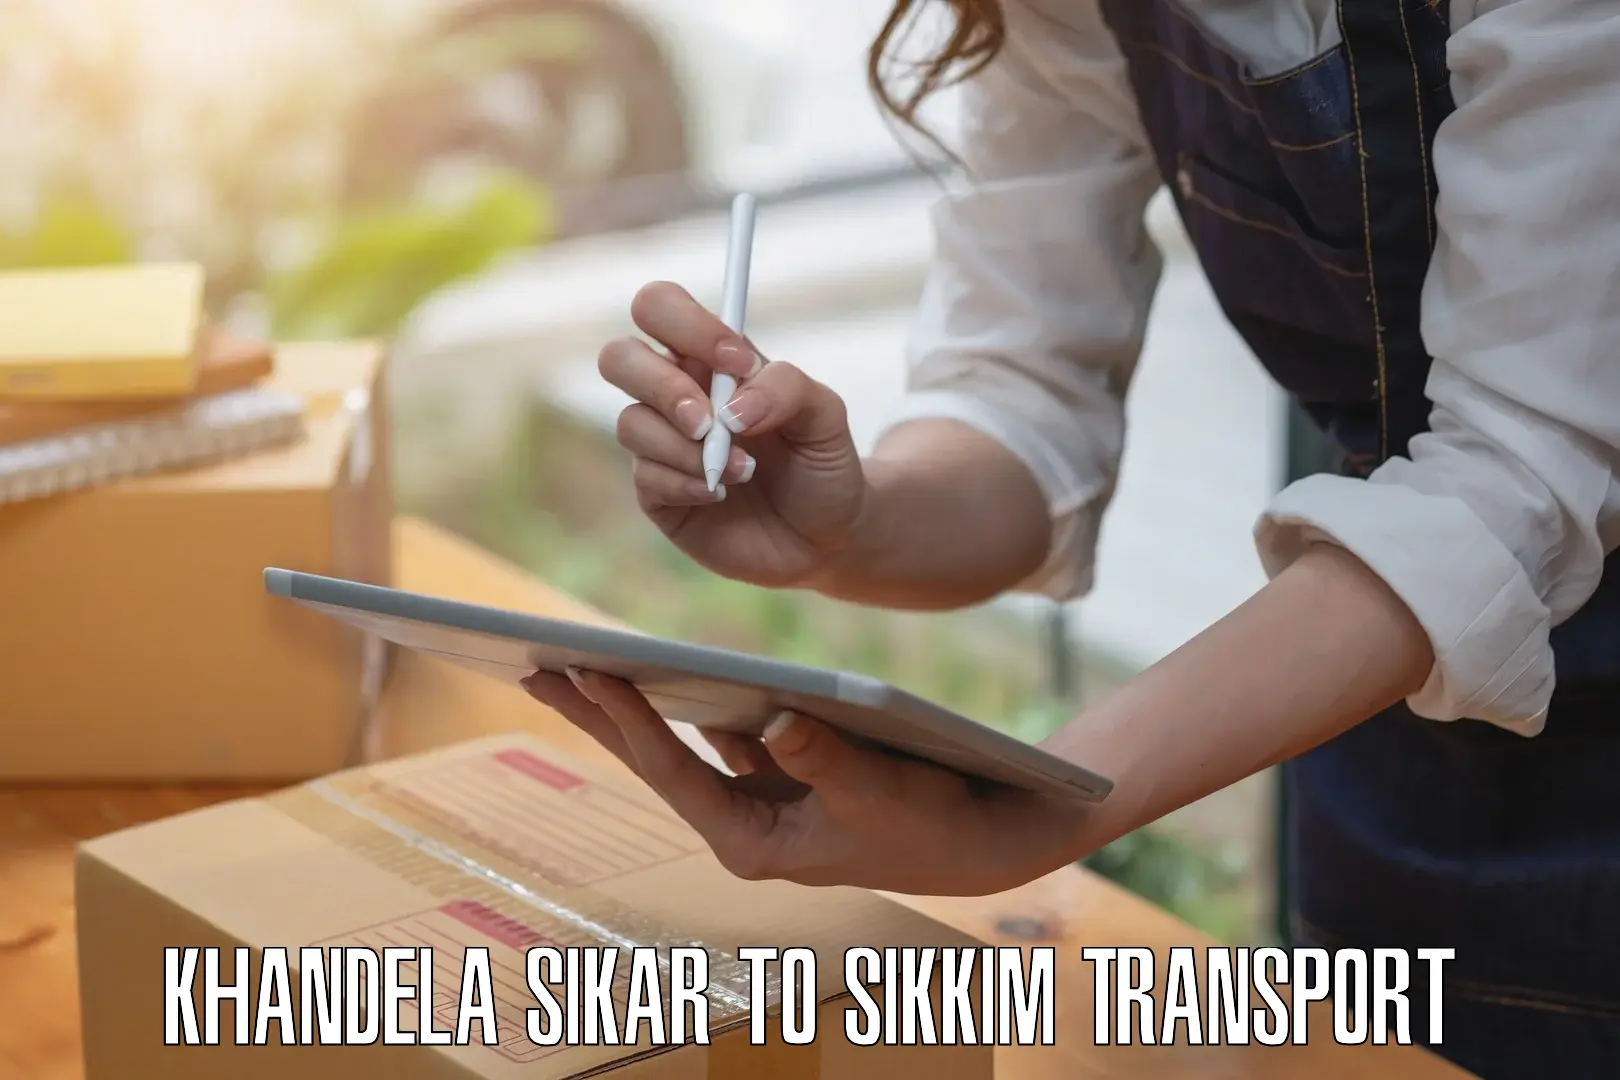 Express transport services Khandela Sikar to Sikkim